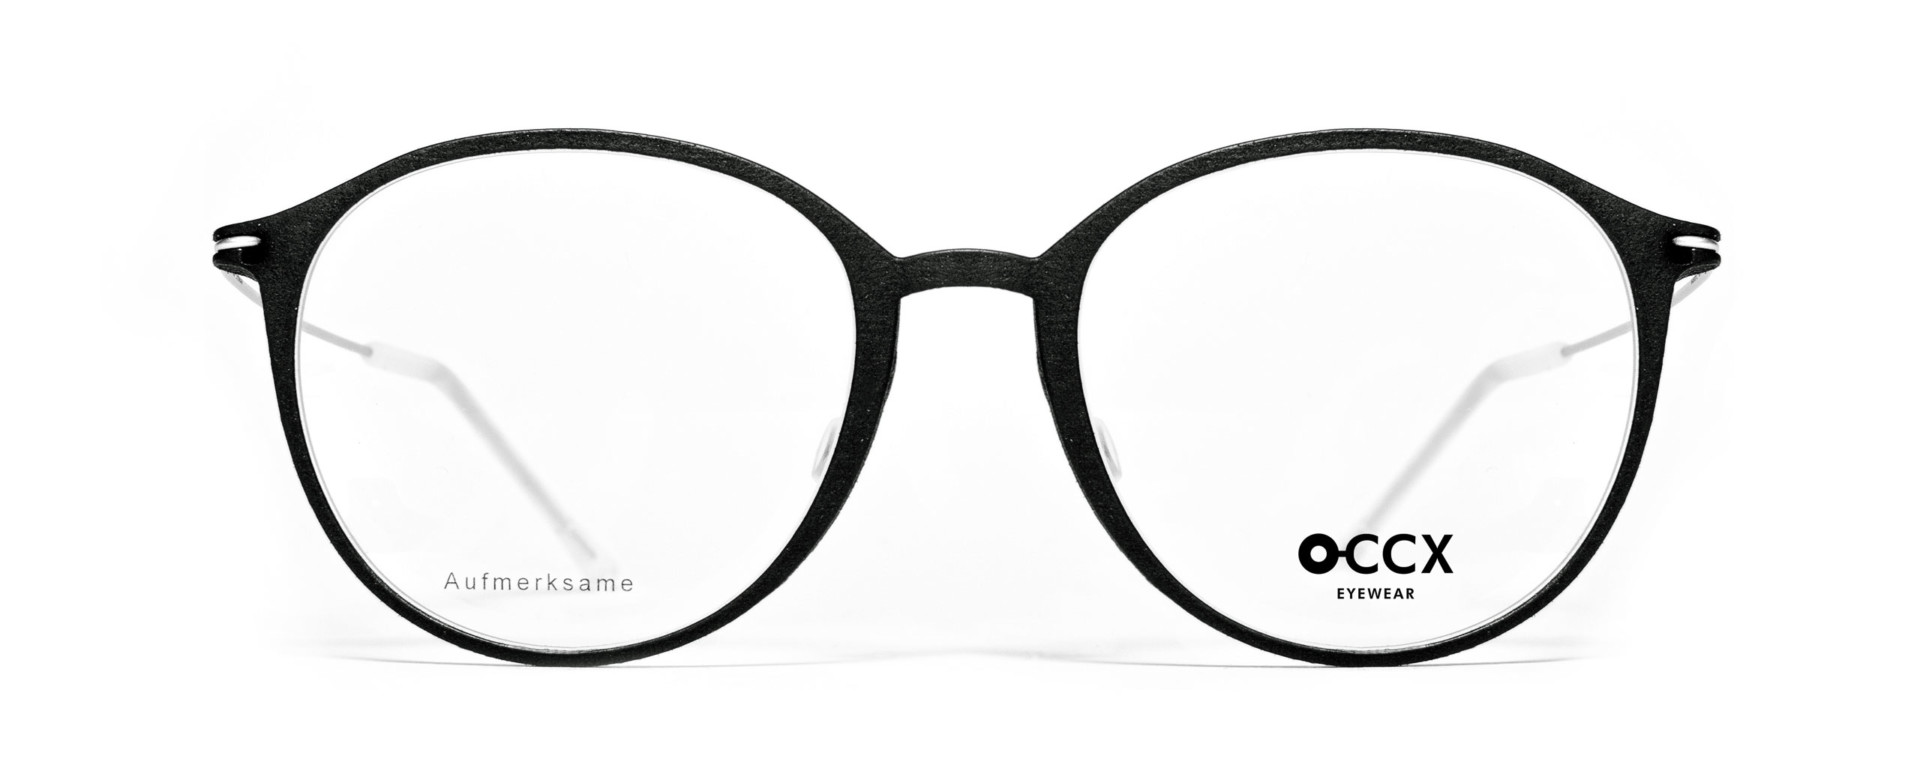 O-CCX Eyewear Slim Aufmerksame schiefer